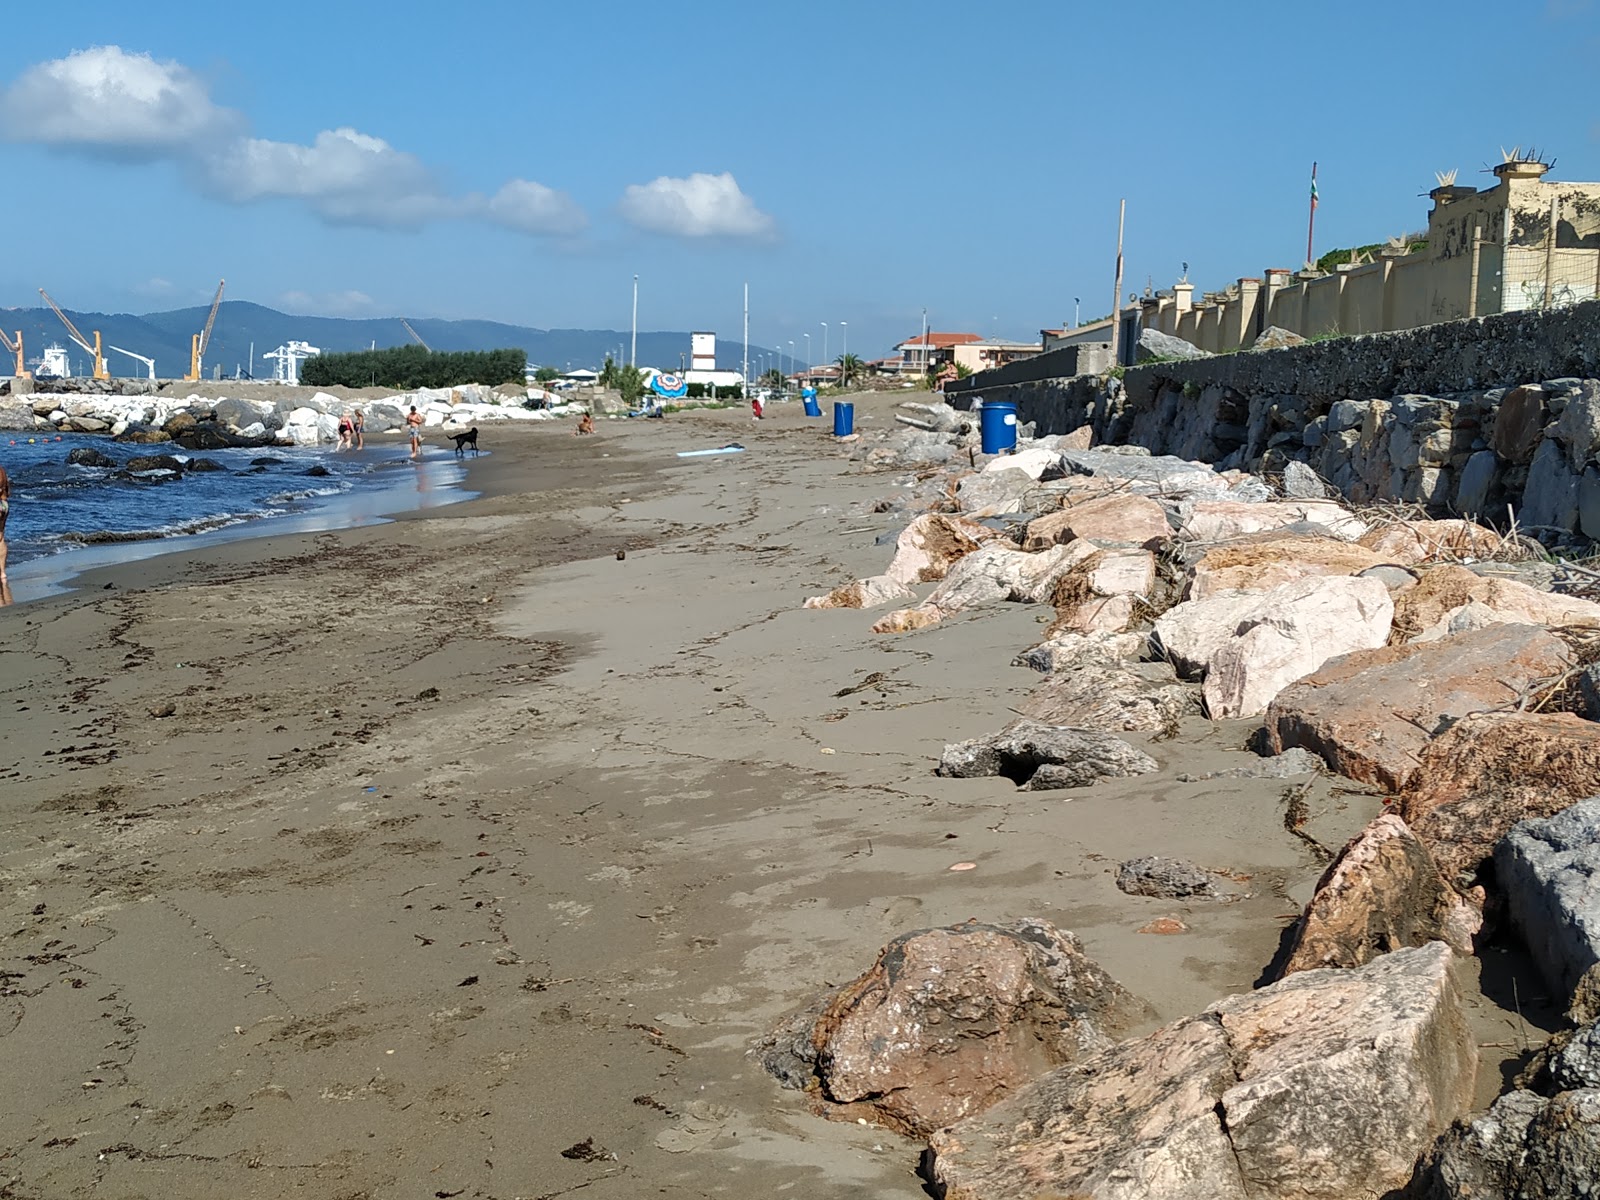 Zdjęcie Ostello beach z poziomem czystości głoska bezdźwięczna